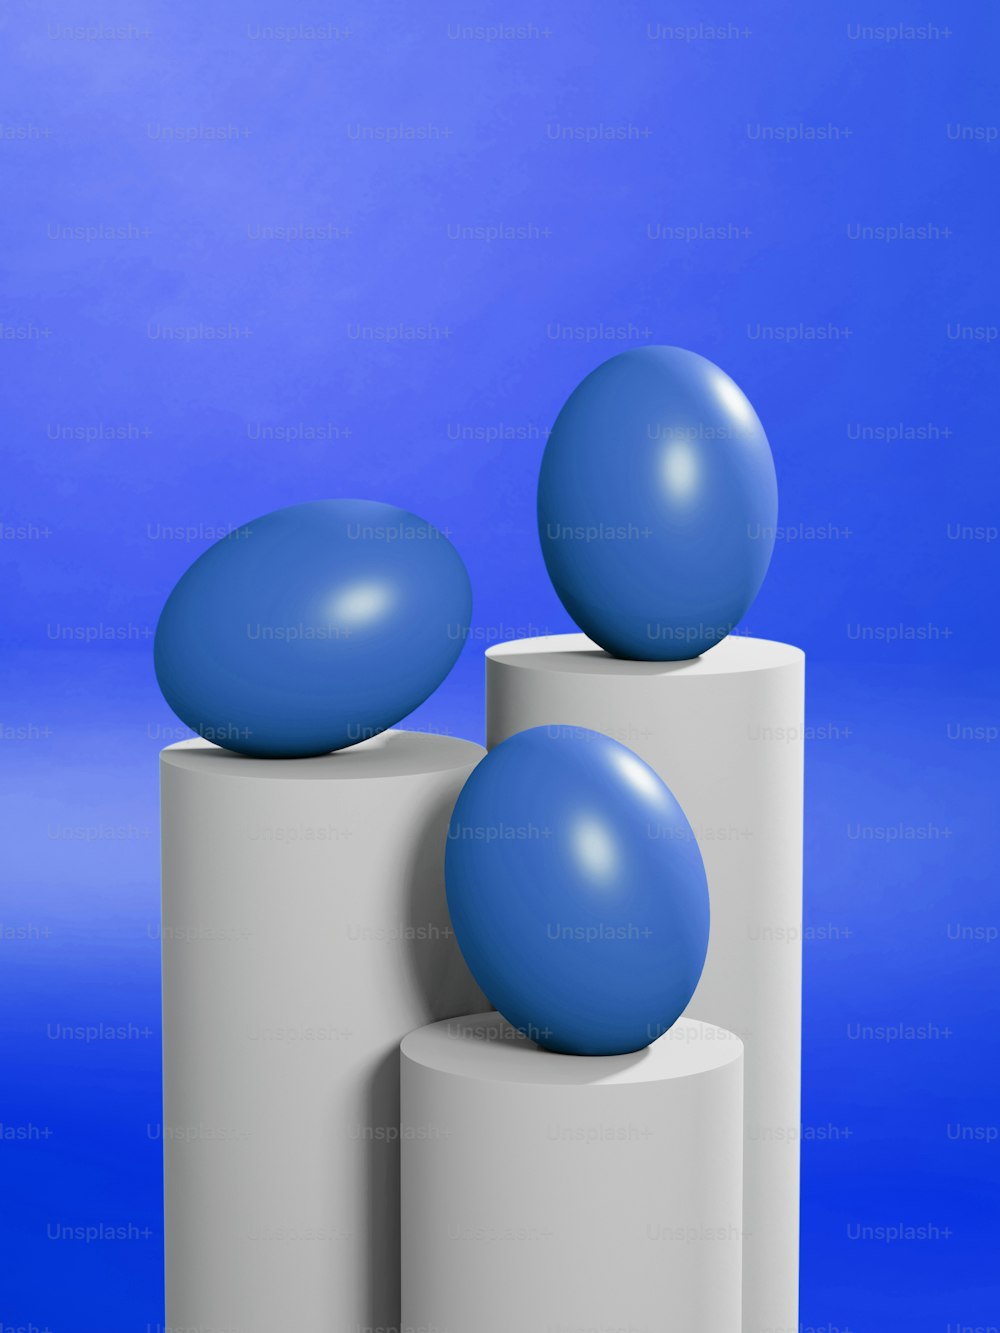 두 개의 흰색 실린더 위에 앉아있는 파란색 공